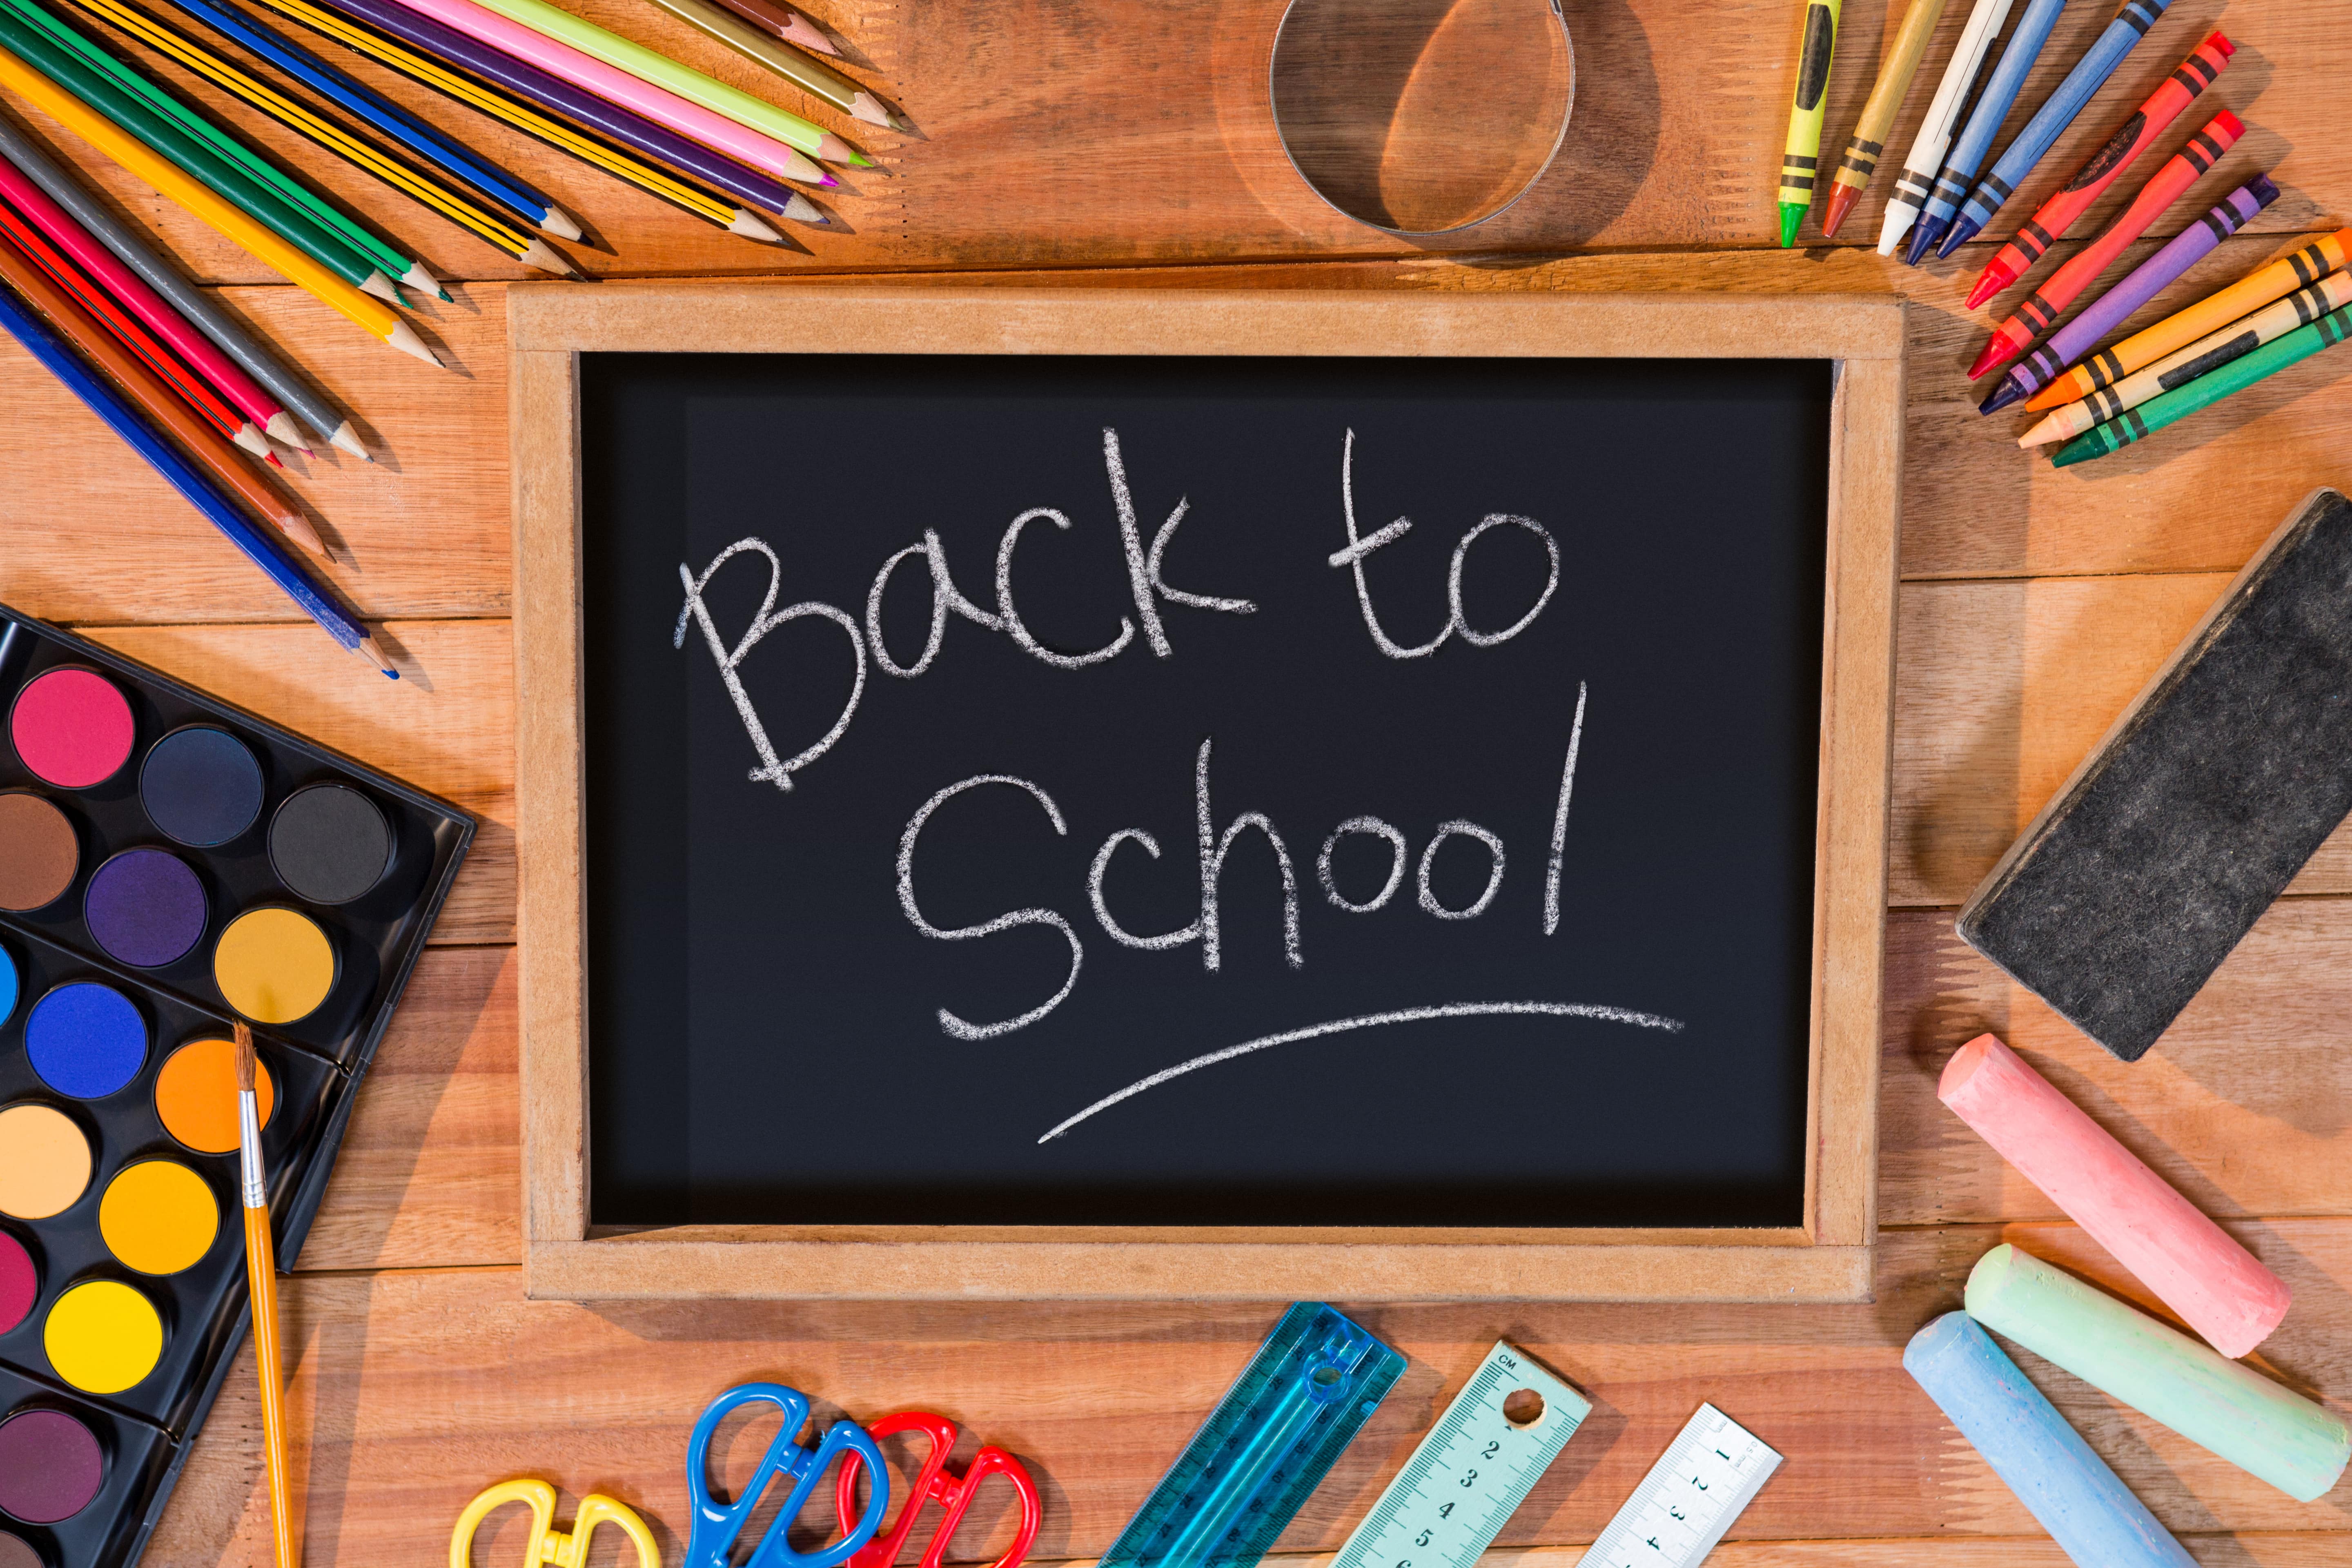 Tafel mit der Aufschrift "Back to school"